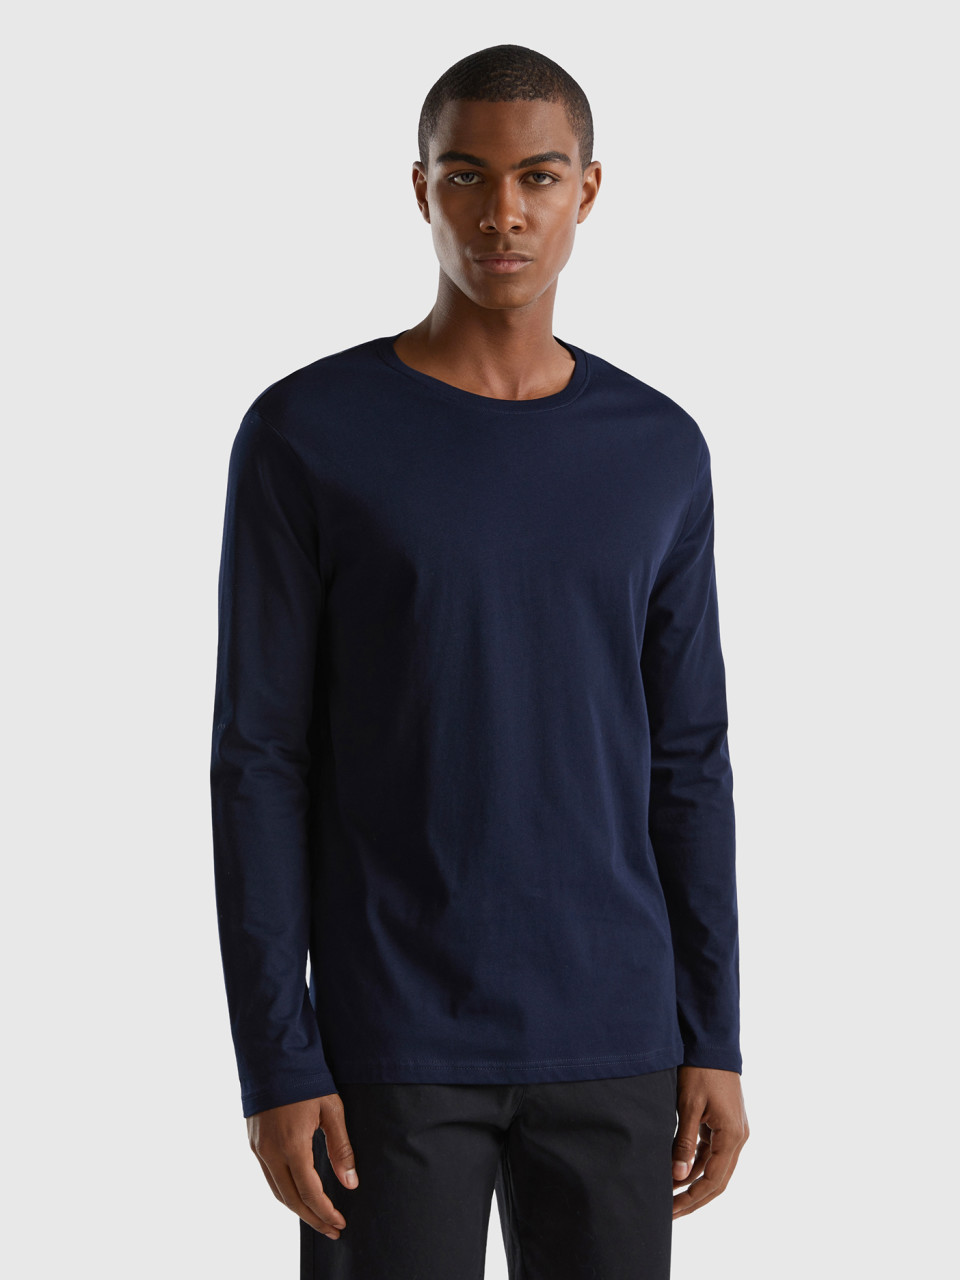 Benetton, Long Sleeve Pure Cotton T-shirt, Dark Blue, Men